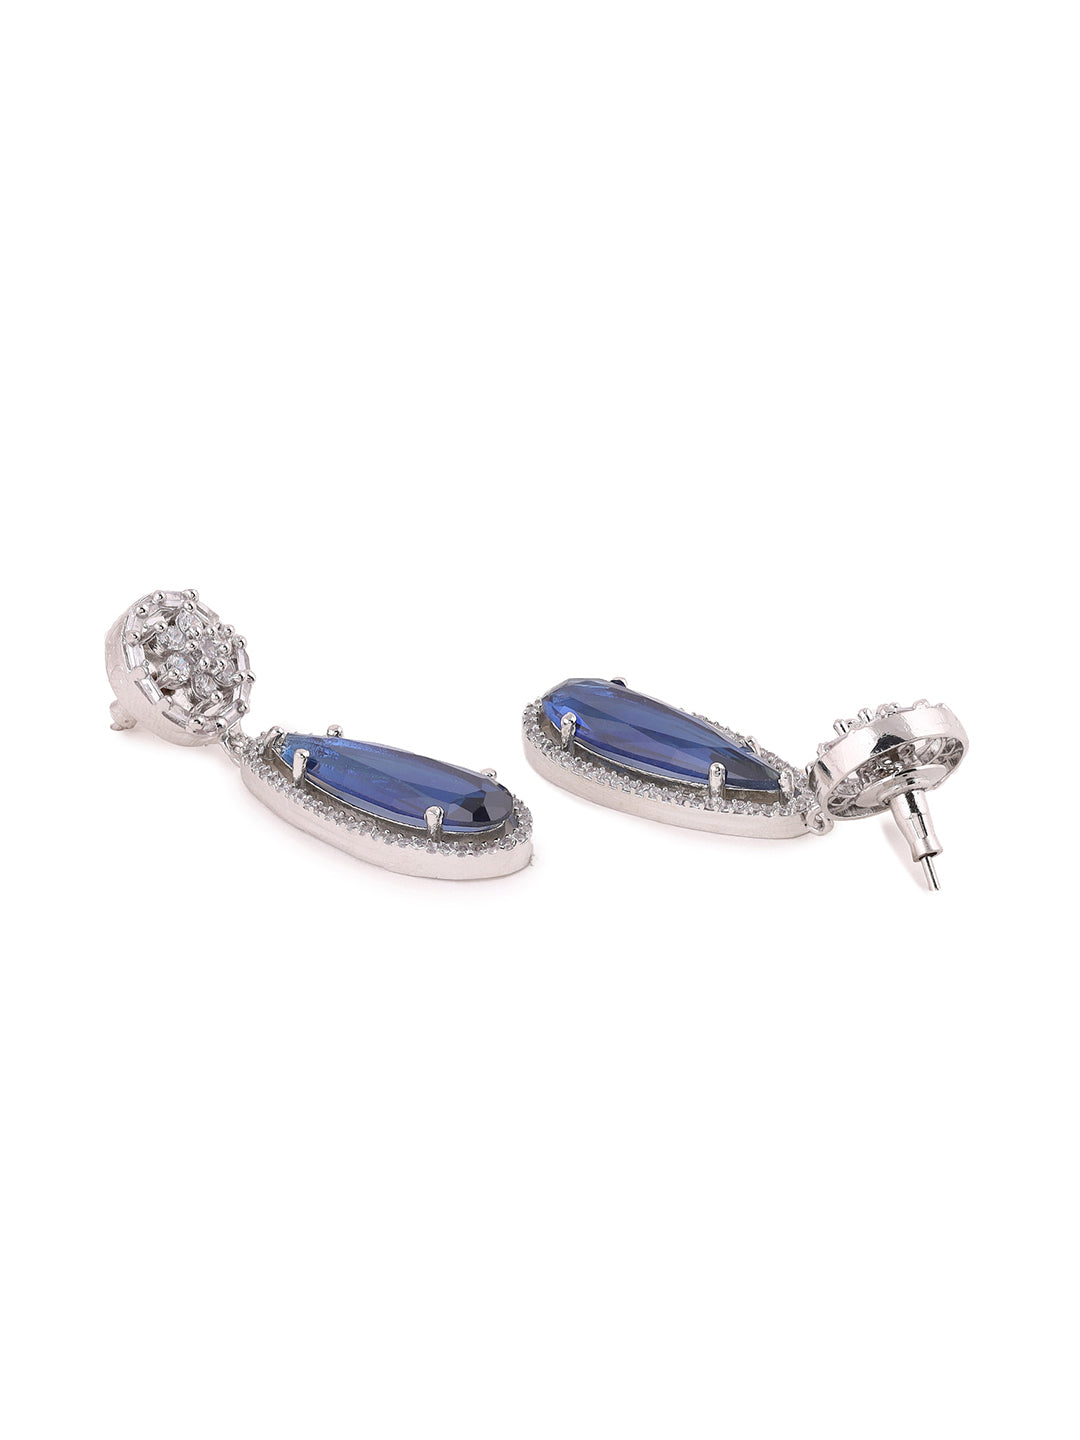 Priyaasi AD Floral Dark Blue Stoned Earrings